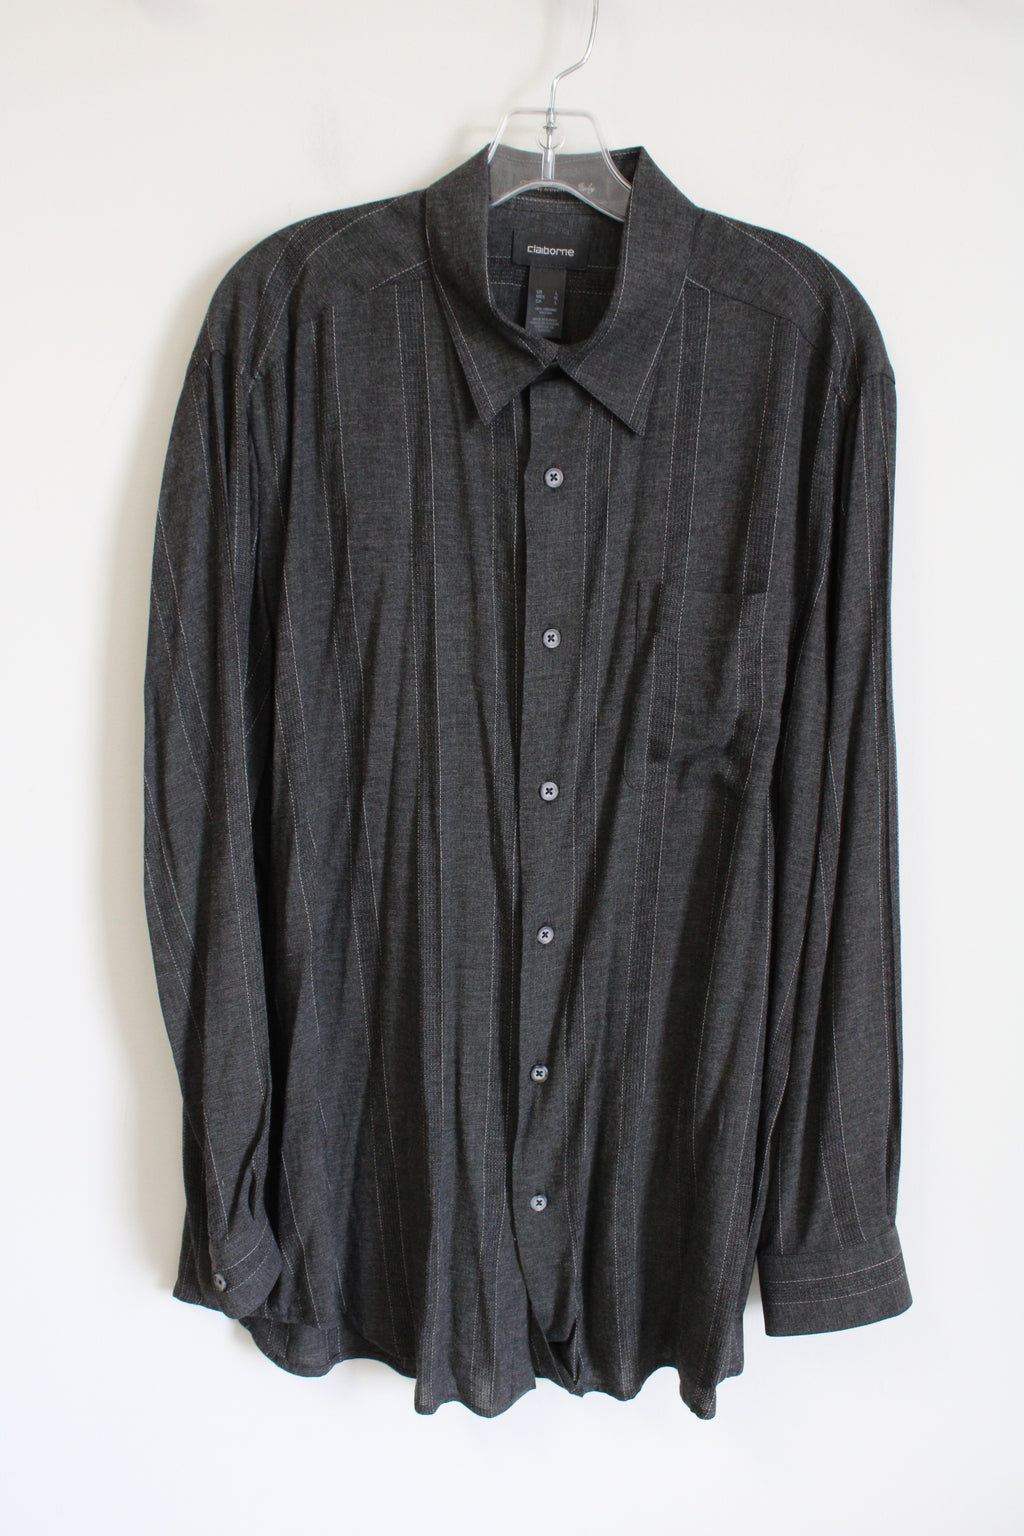 Claiborne Vintage Gray Striped Rayon Button Down Shirt | L